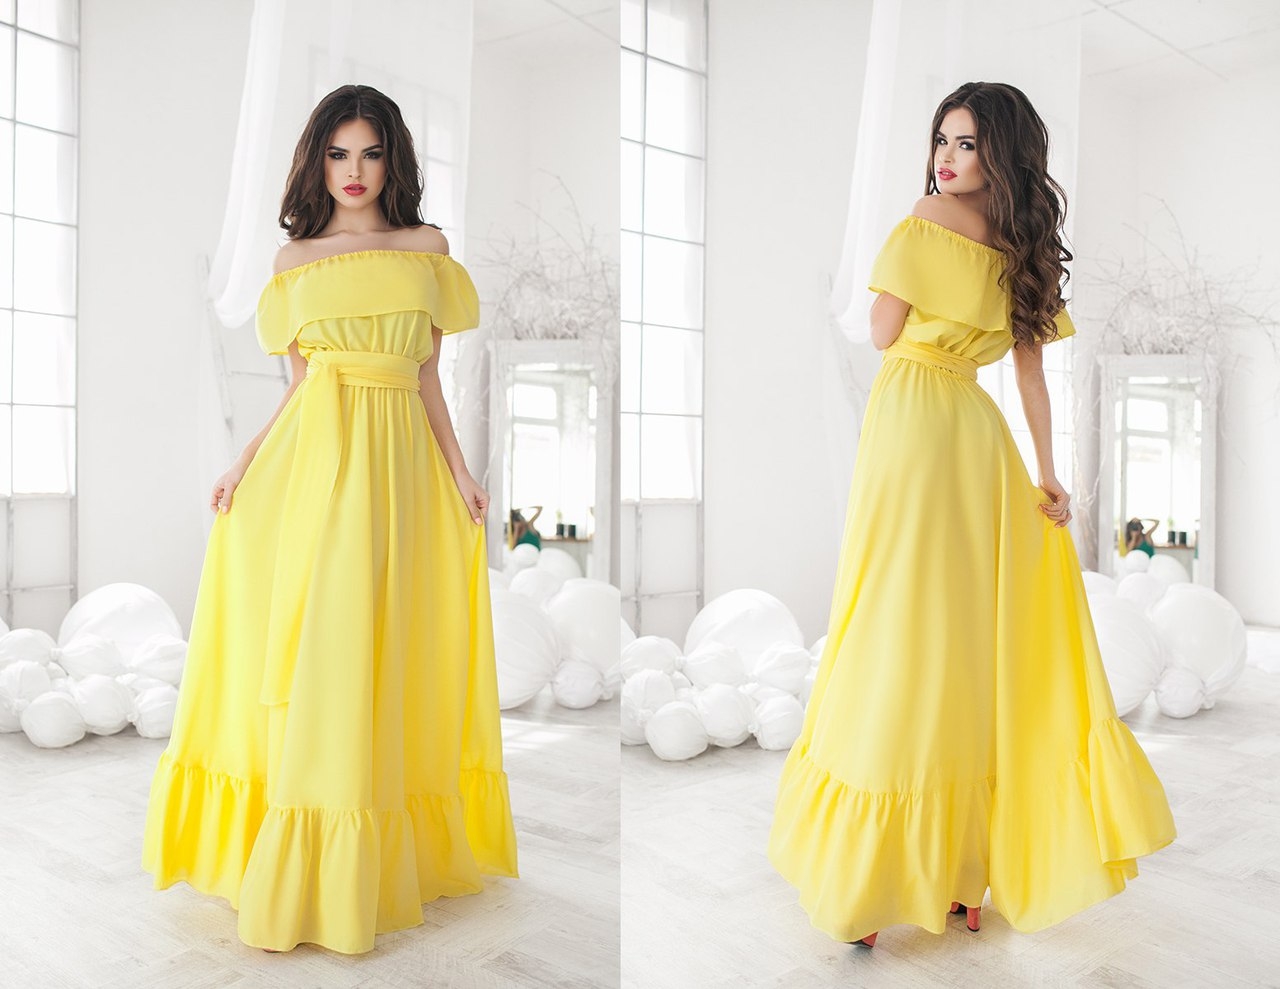 Желтое длинное платье